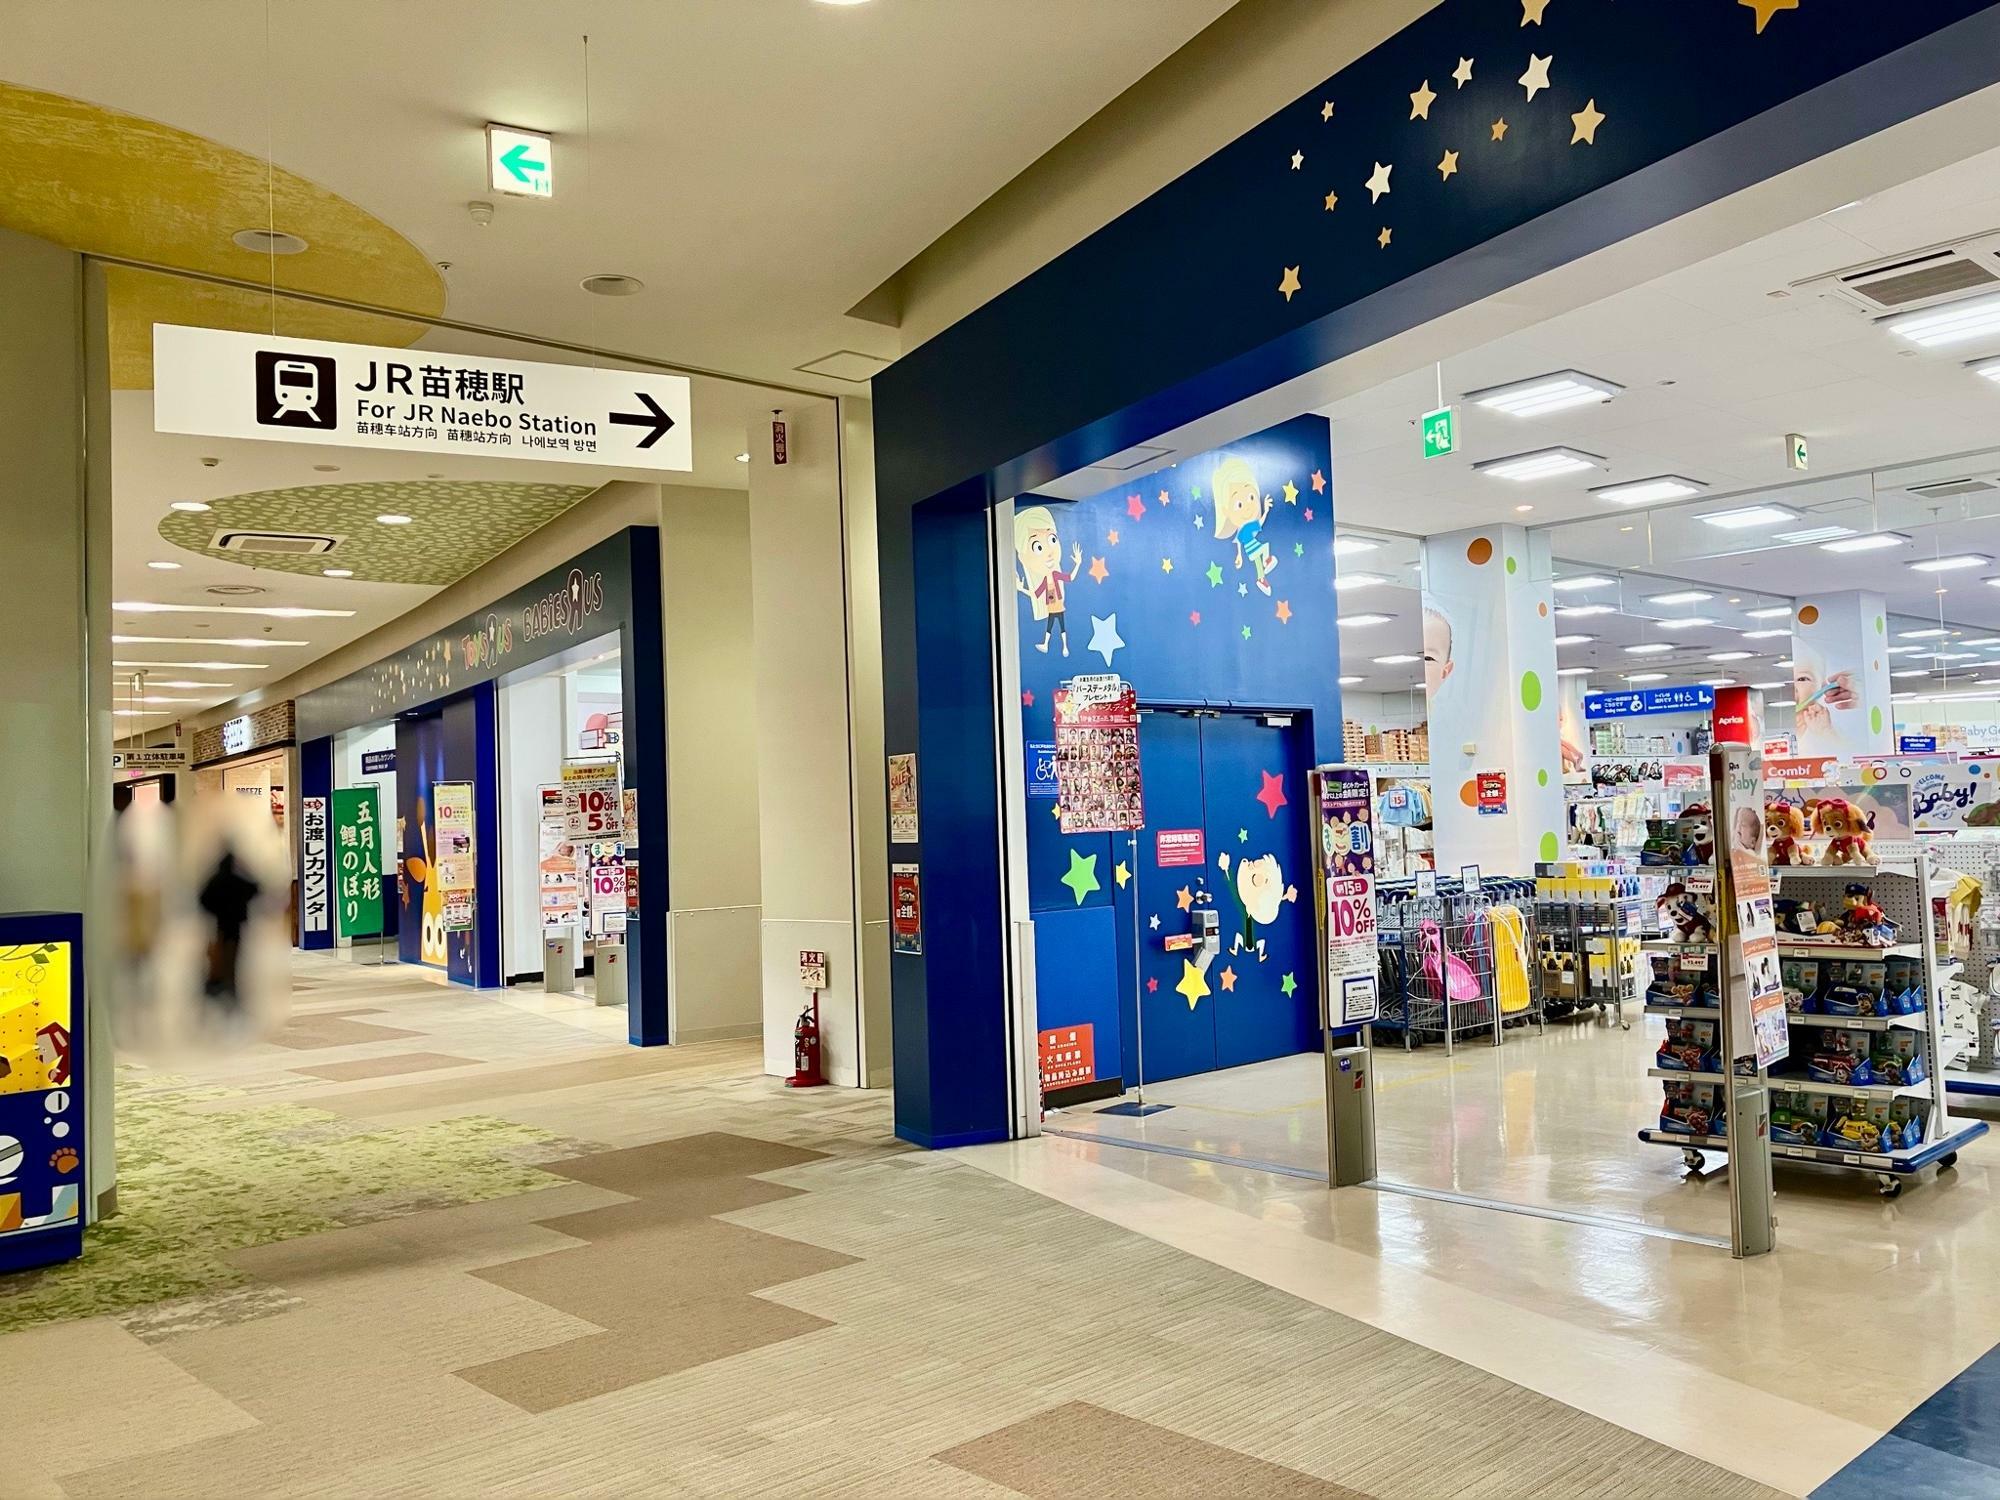 トイザらス・ベビーザらス 札幌店入口に「JR苗穂駅」の案内が付きました。